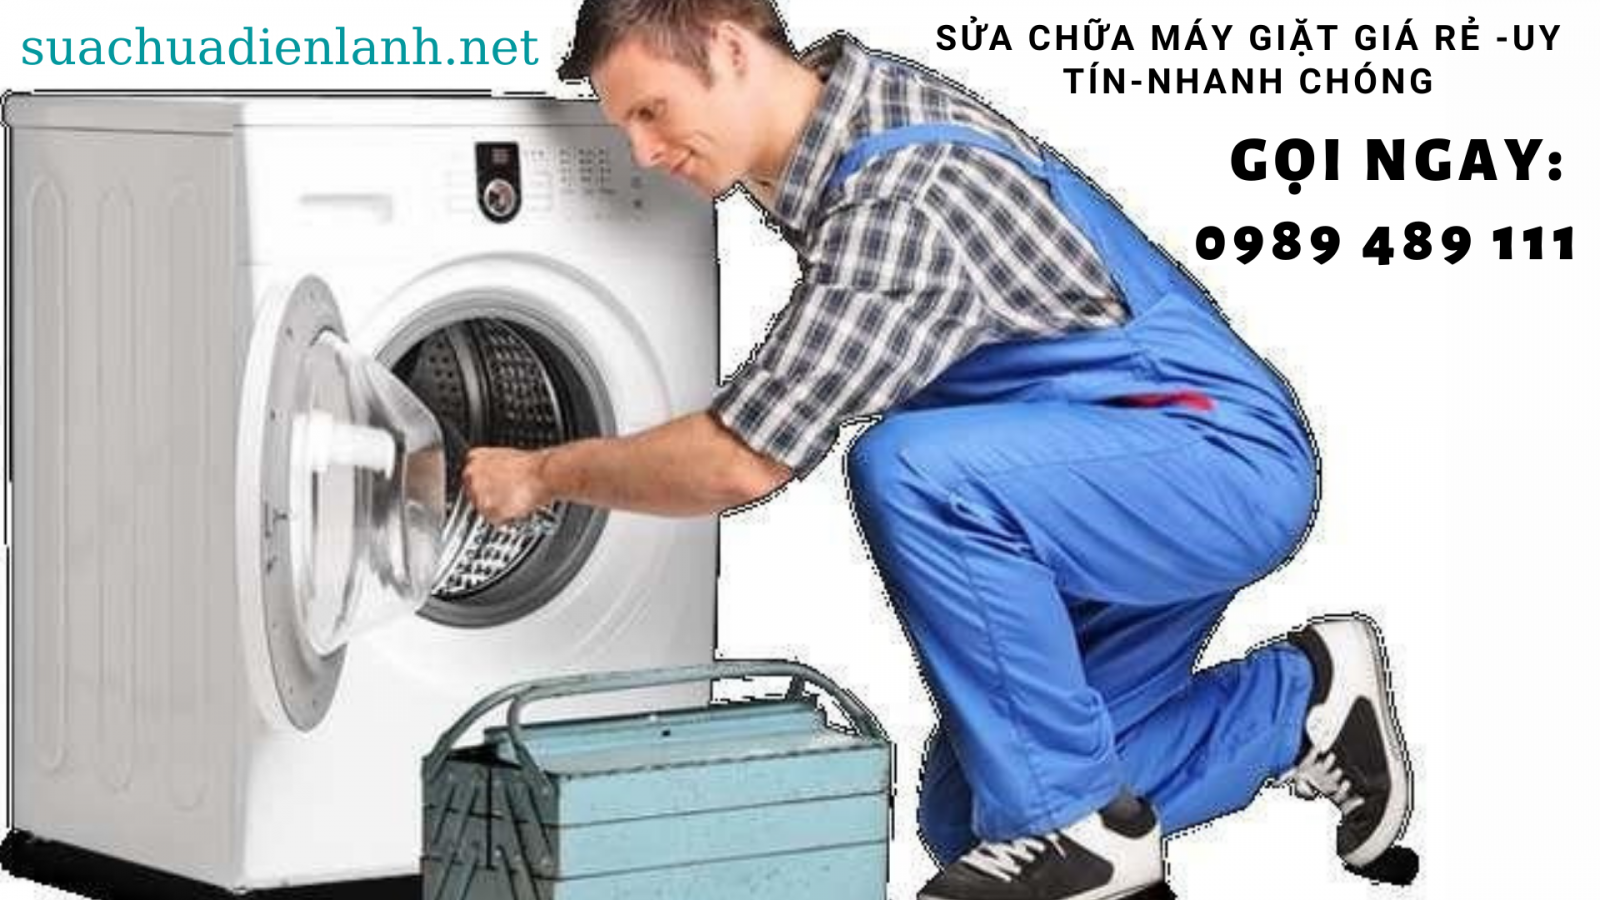 Sửa chữa máy giặt tại Hà Nội giá rẻ uy tín chất lượng.